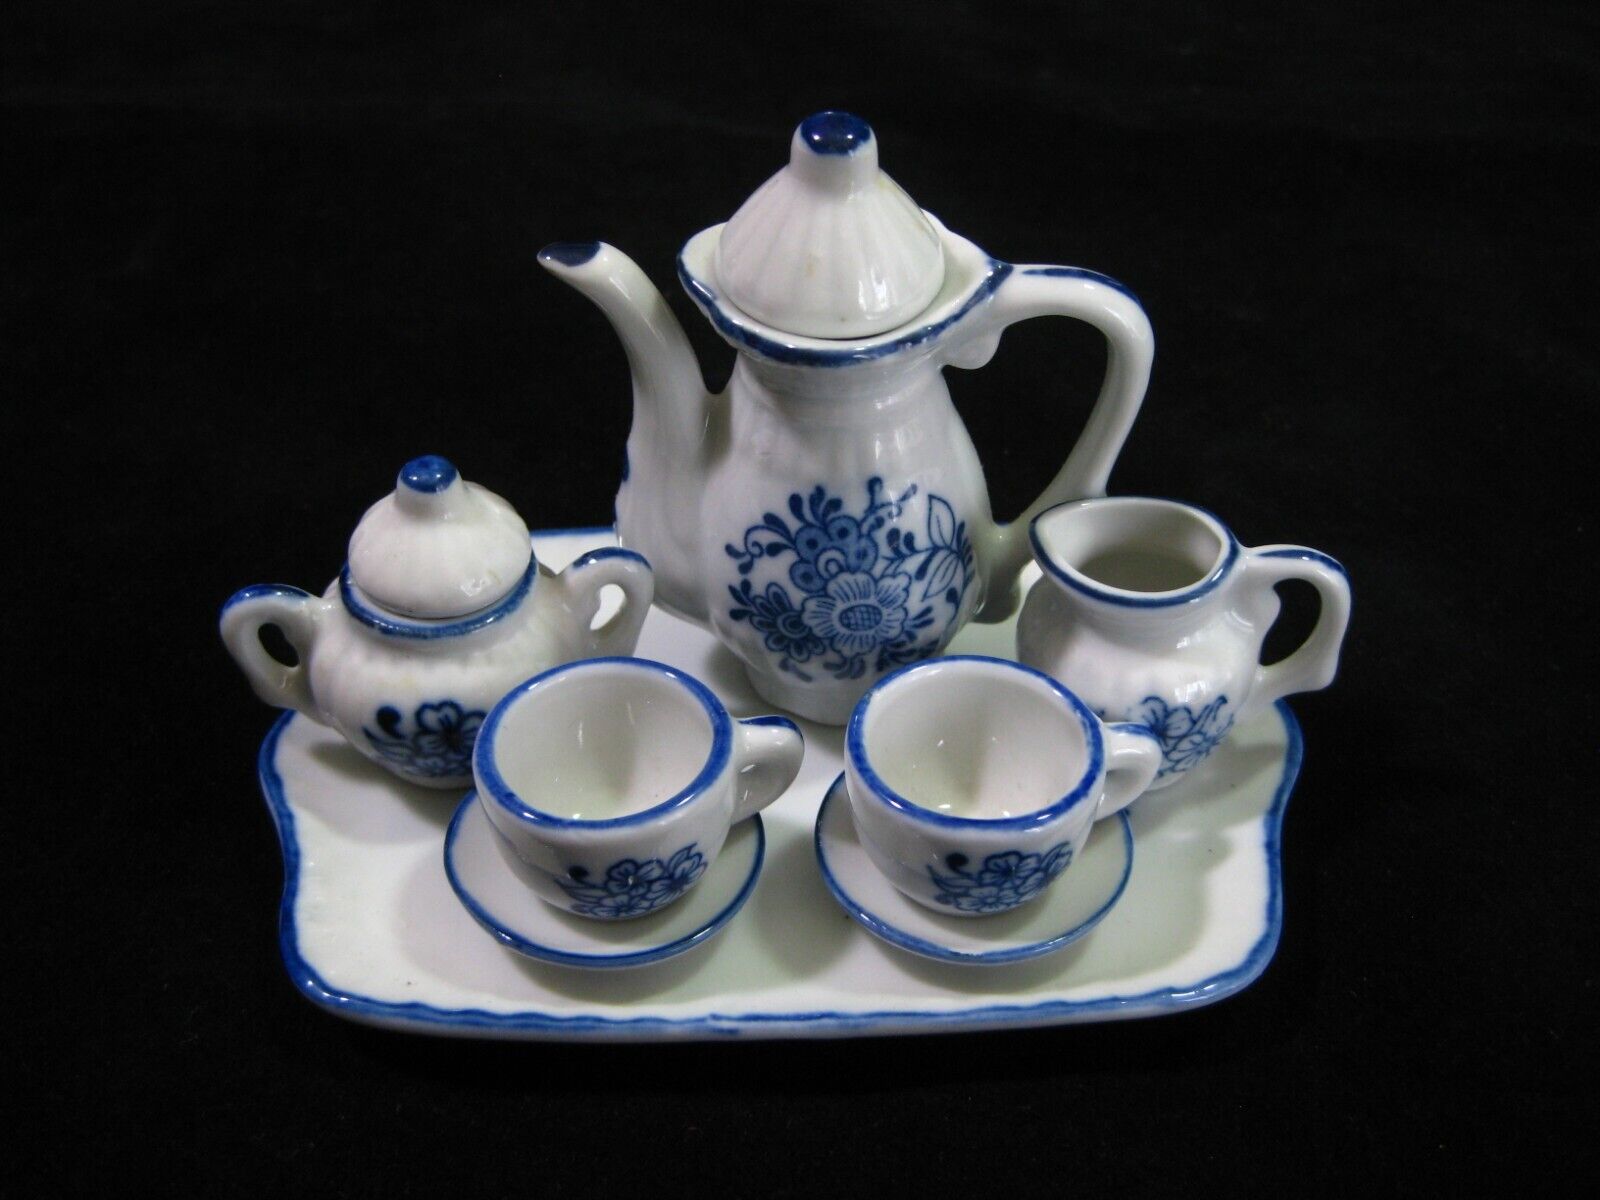 Andrea by Sadek Miniature Dollhouse Porcelain Tea Set 10pc Blue & White Floral